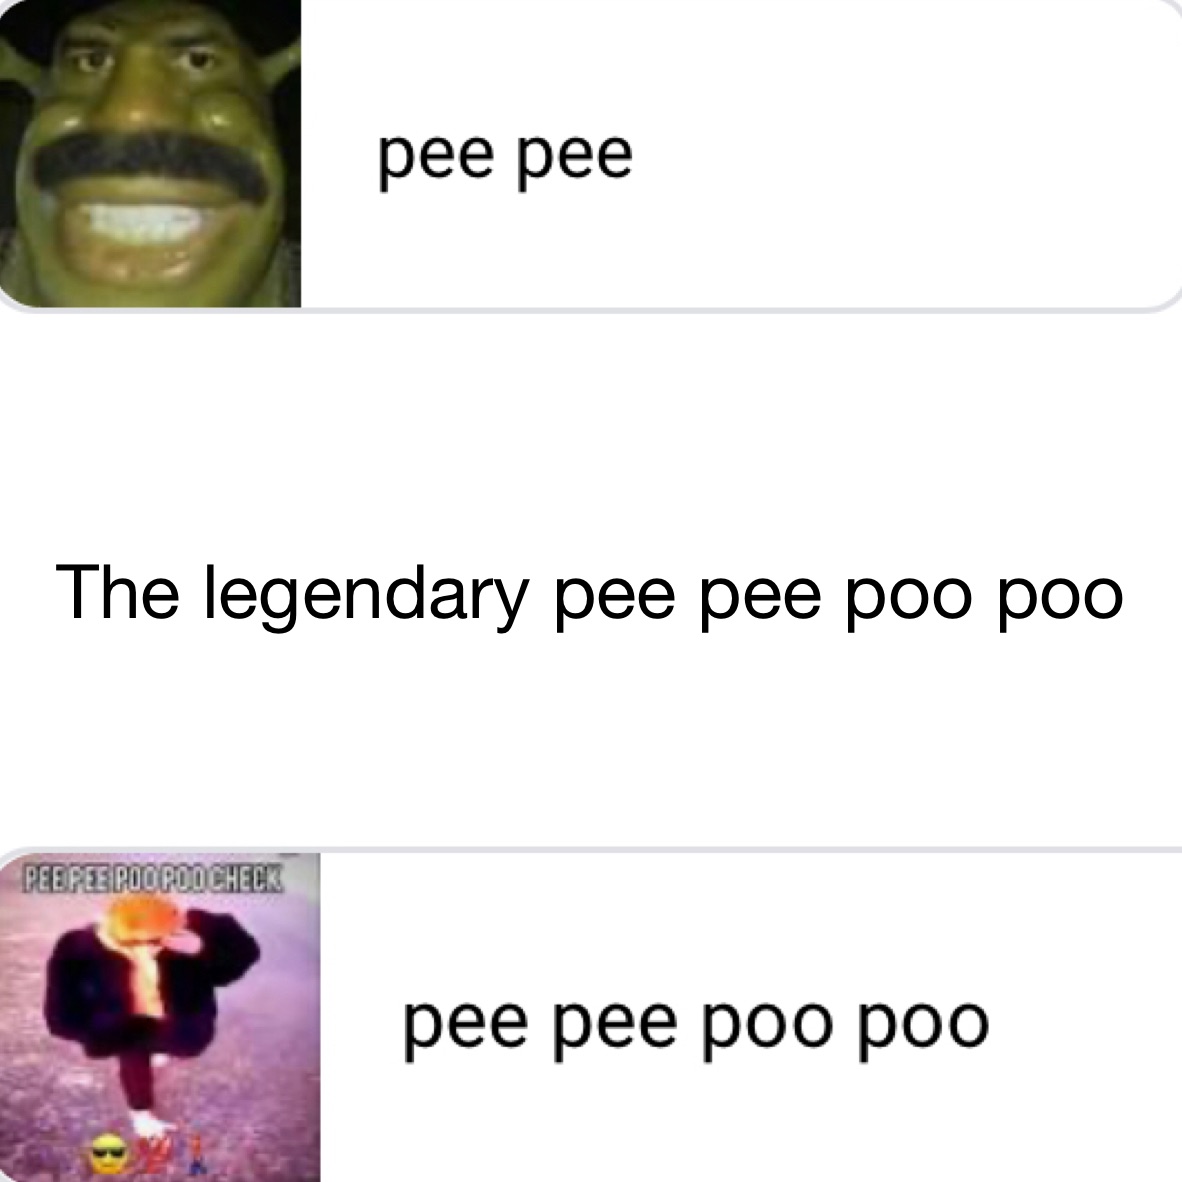 The legendary pee pee poo poo